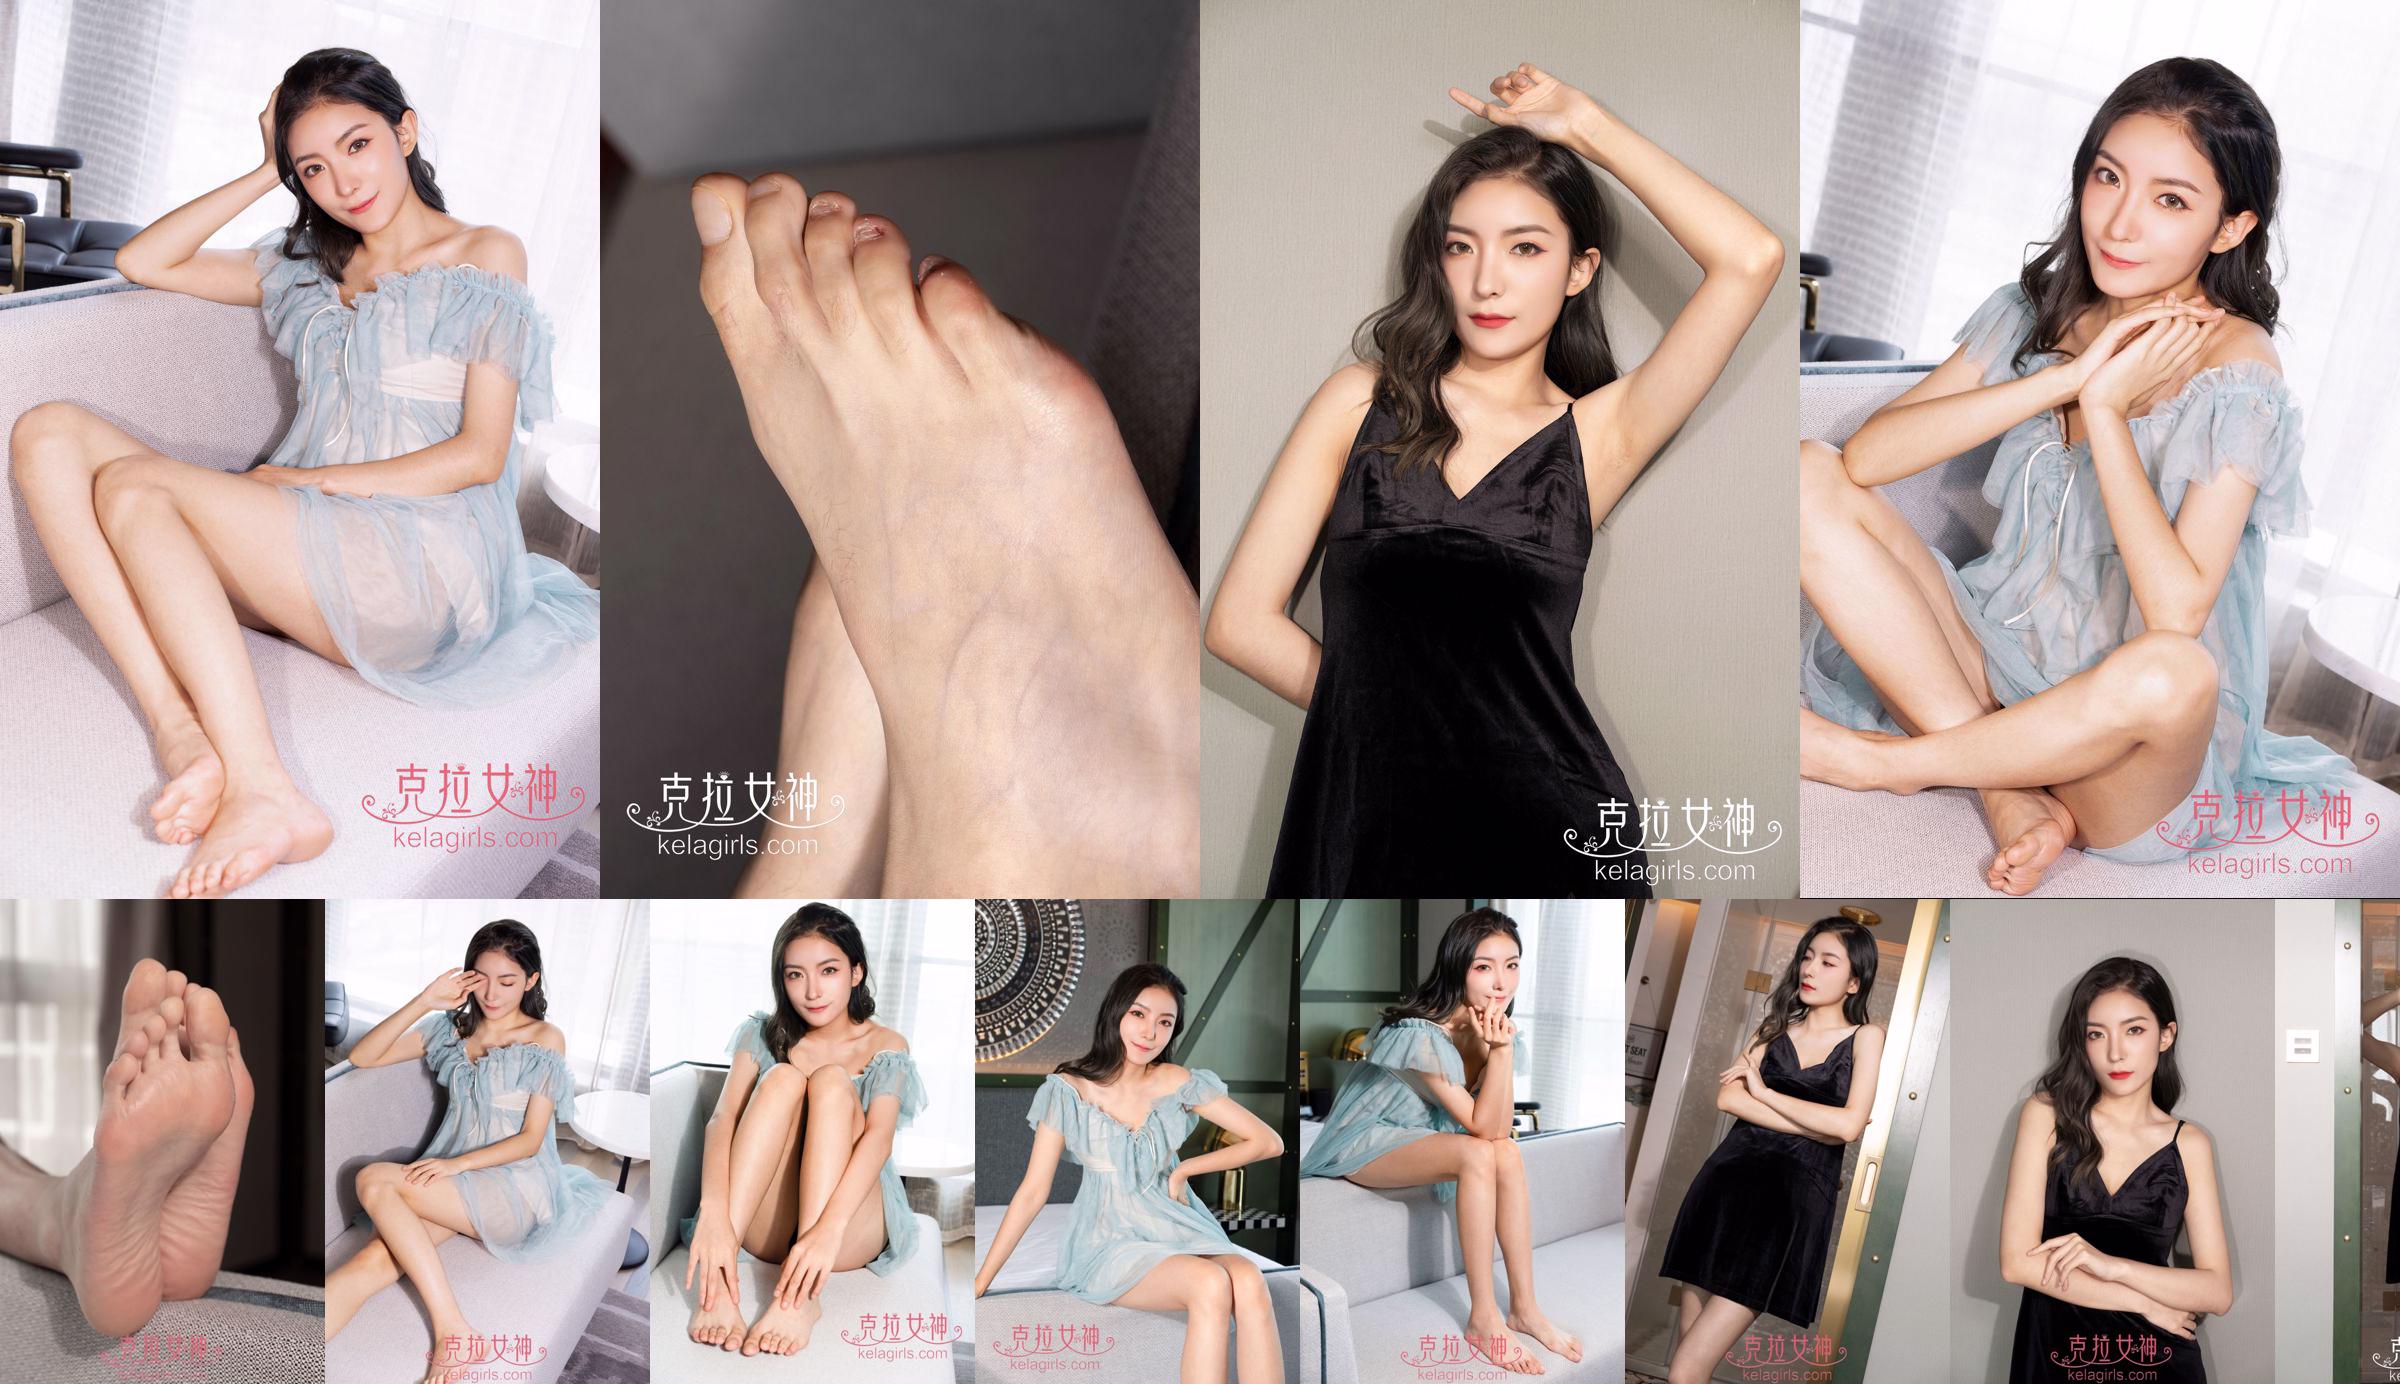 [Kelagirls] Su Zhan "Mesdames pieds nus" No.ad3522 Page 2